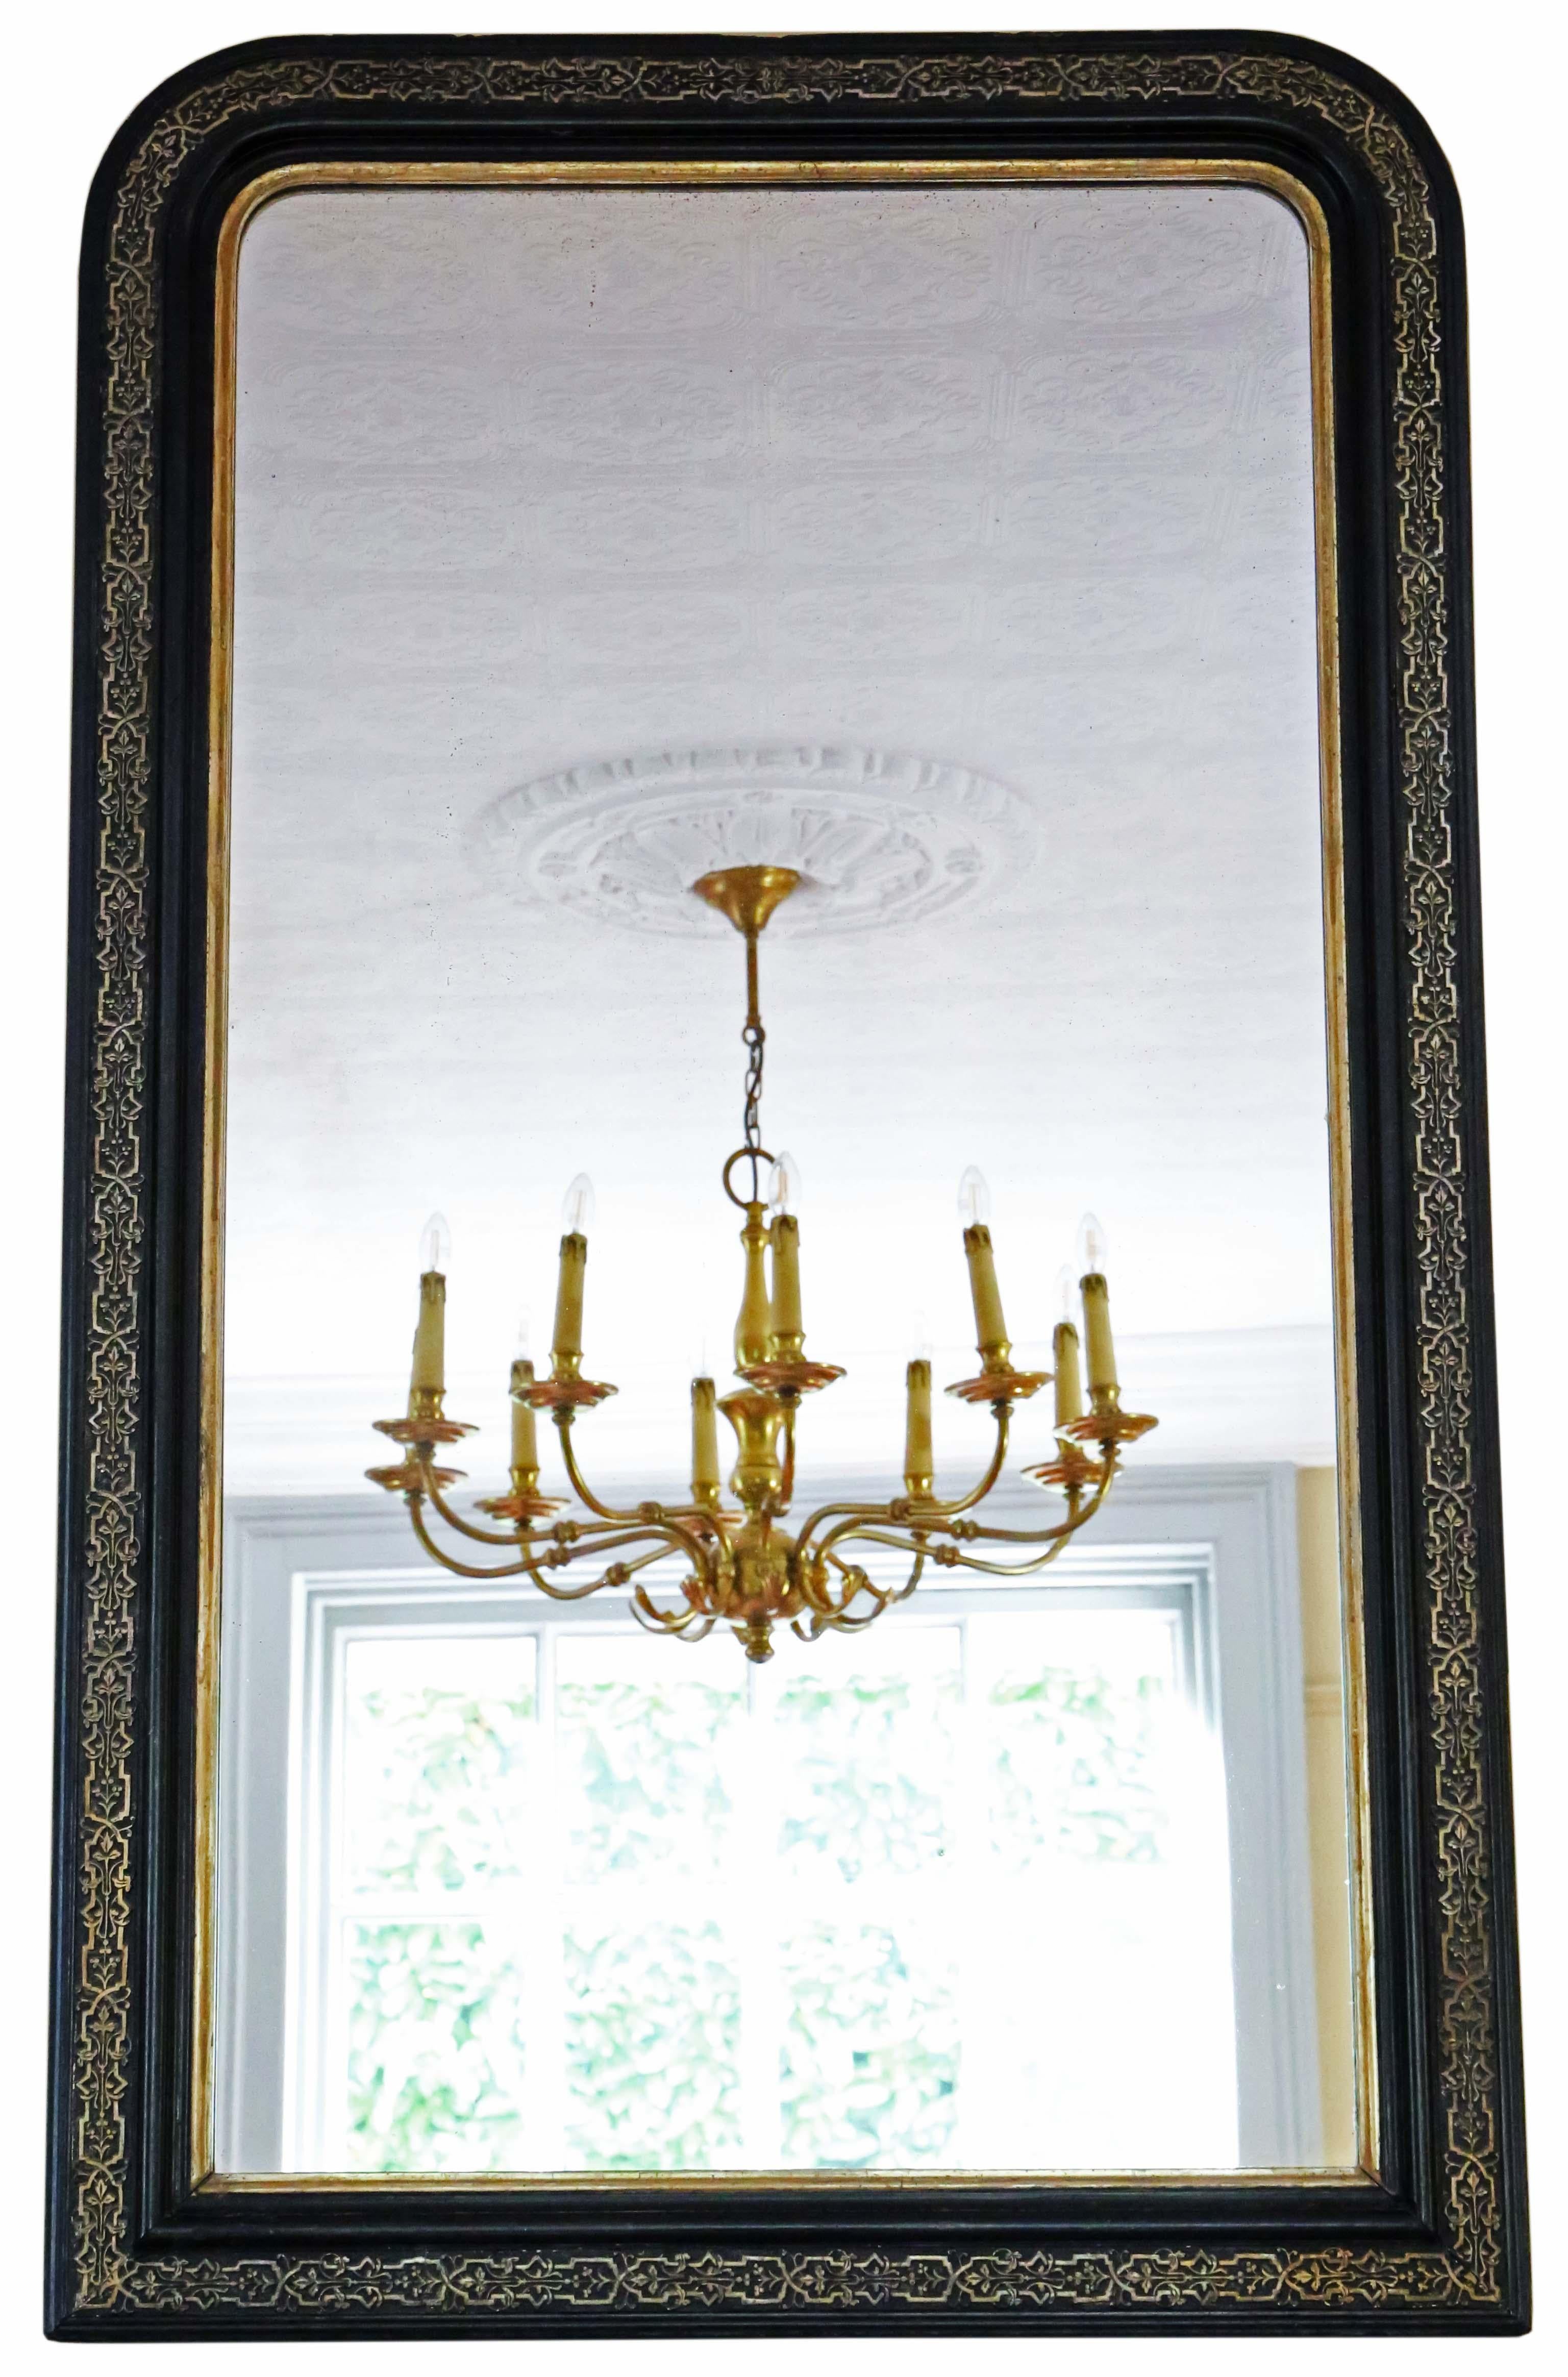 Antiker, sehr großer ebonisierter und vergoldeter Wandspiegel aus dem 19. Reizvoller Charme und Eleganz.

Dies ist ein schöner, seltener Spiegel. Ein bisschen anders und ganz besonders.

Ein beeindruckender Fund, der an der richtigen Stelle